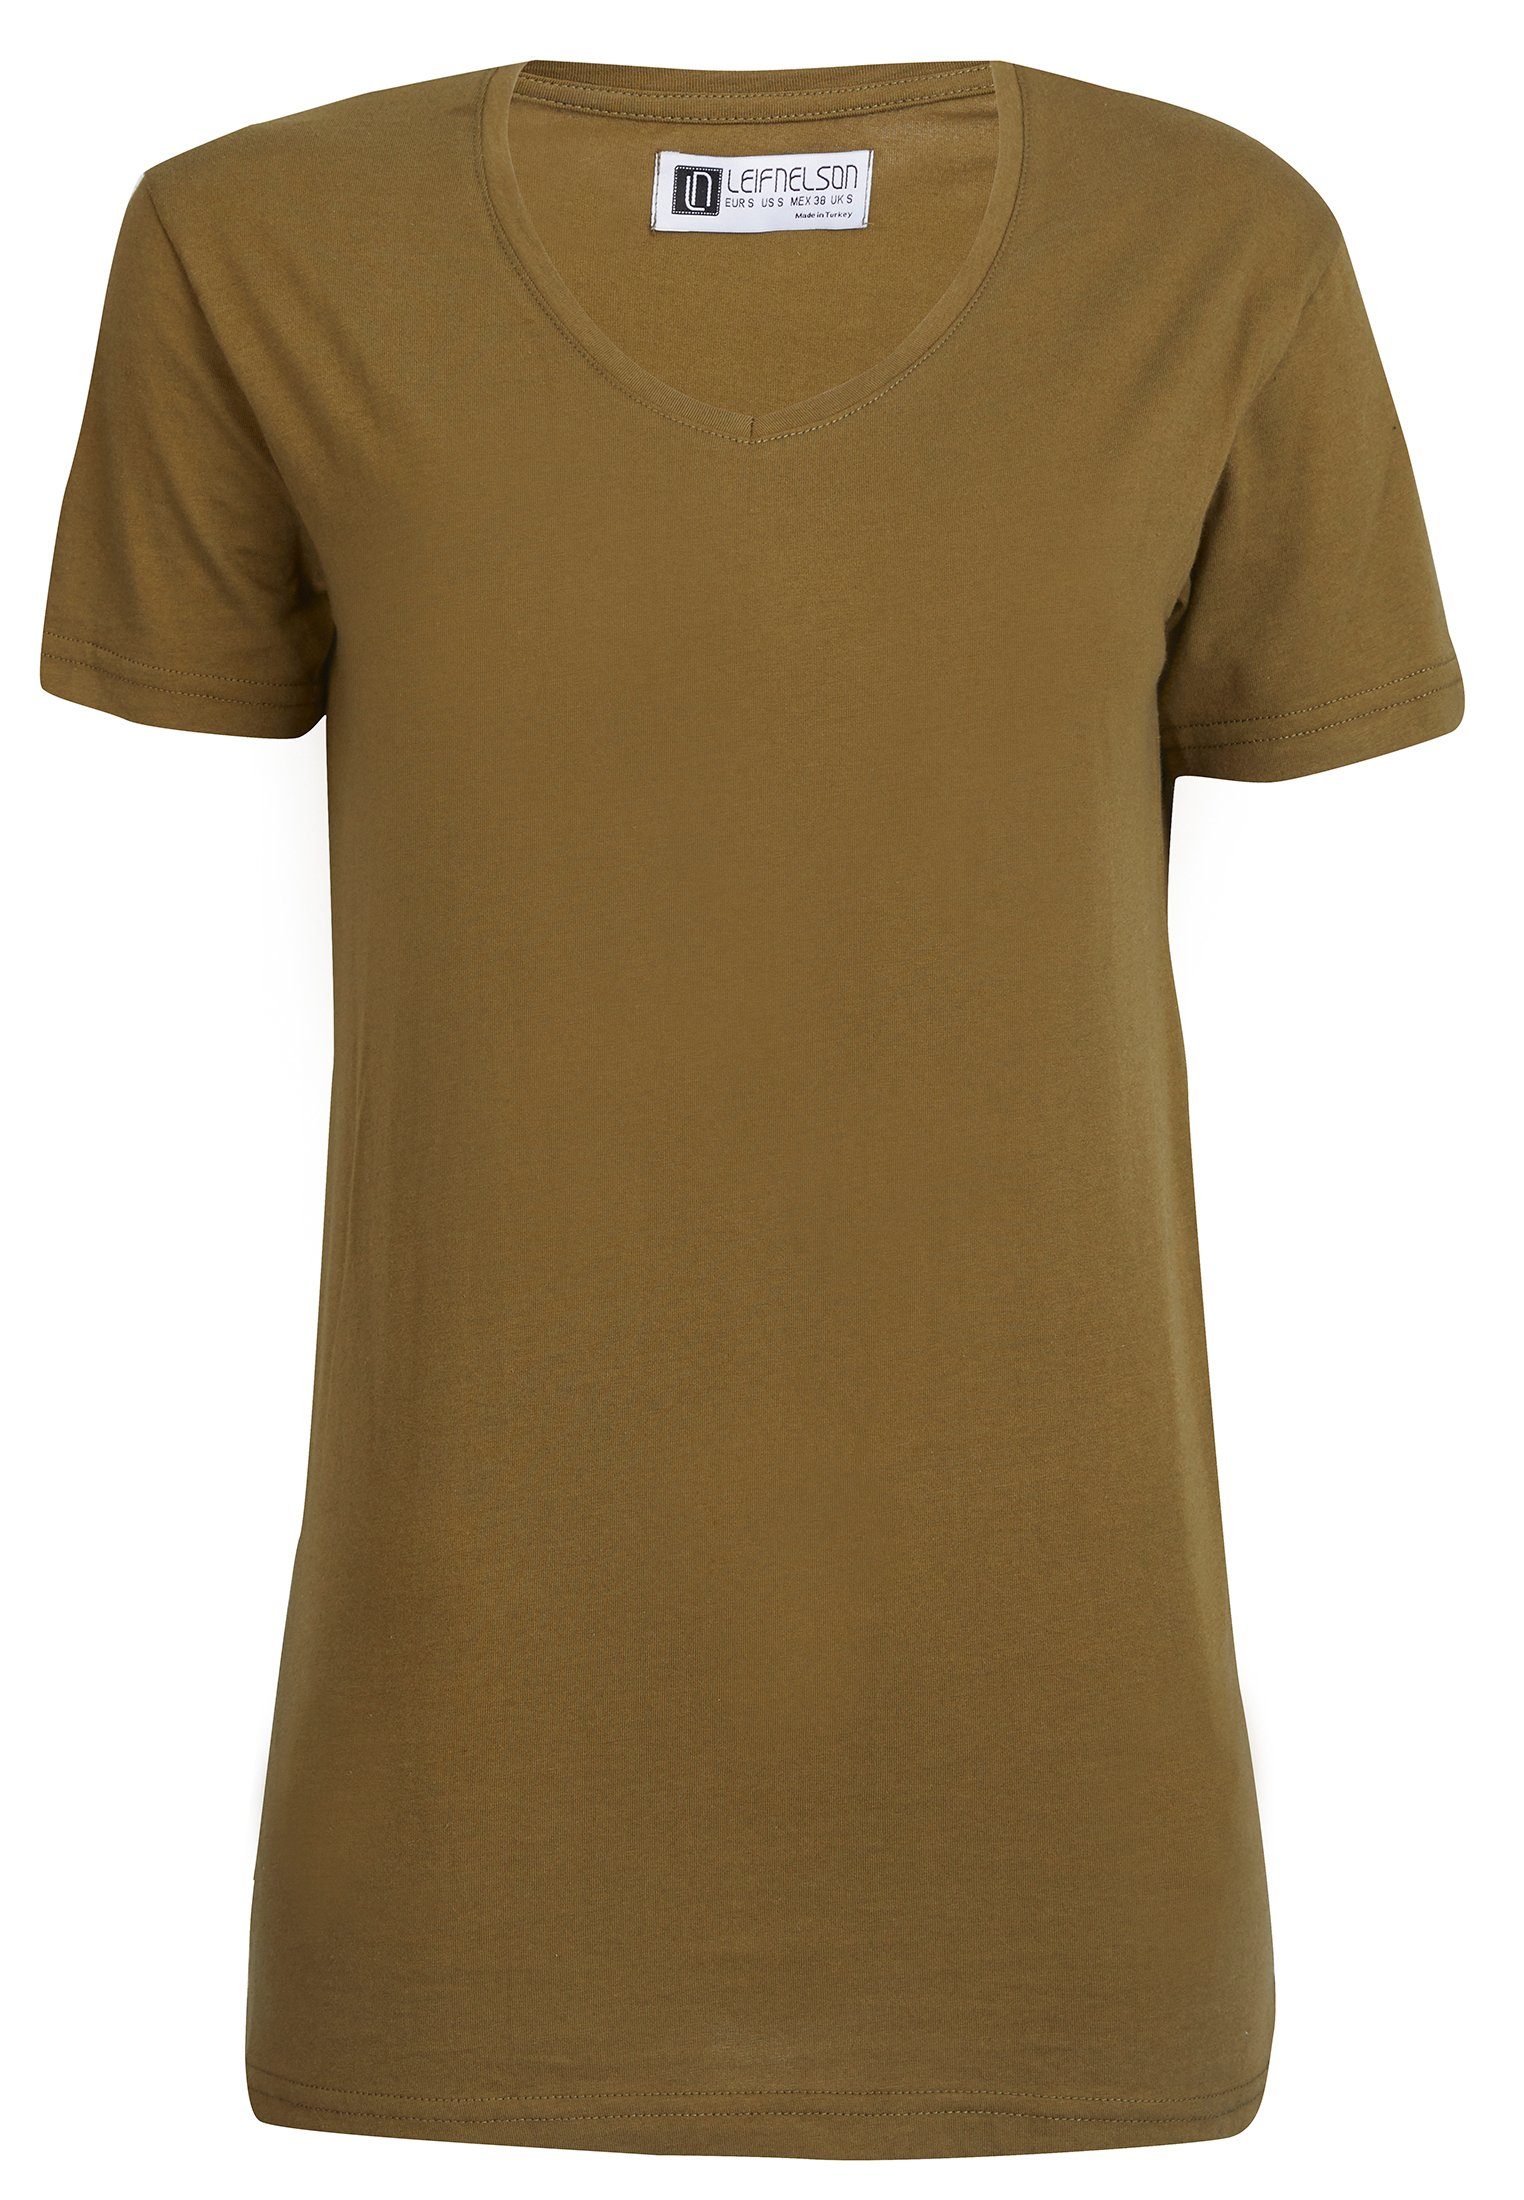 Leif Nelson T-Shirt T-Shirt LN-6372 khaki V-Ausschnitt Herren